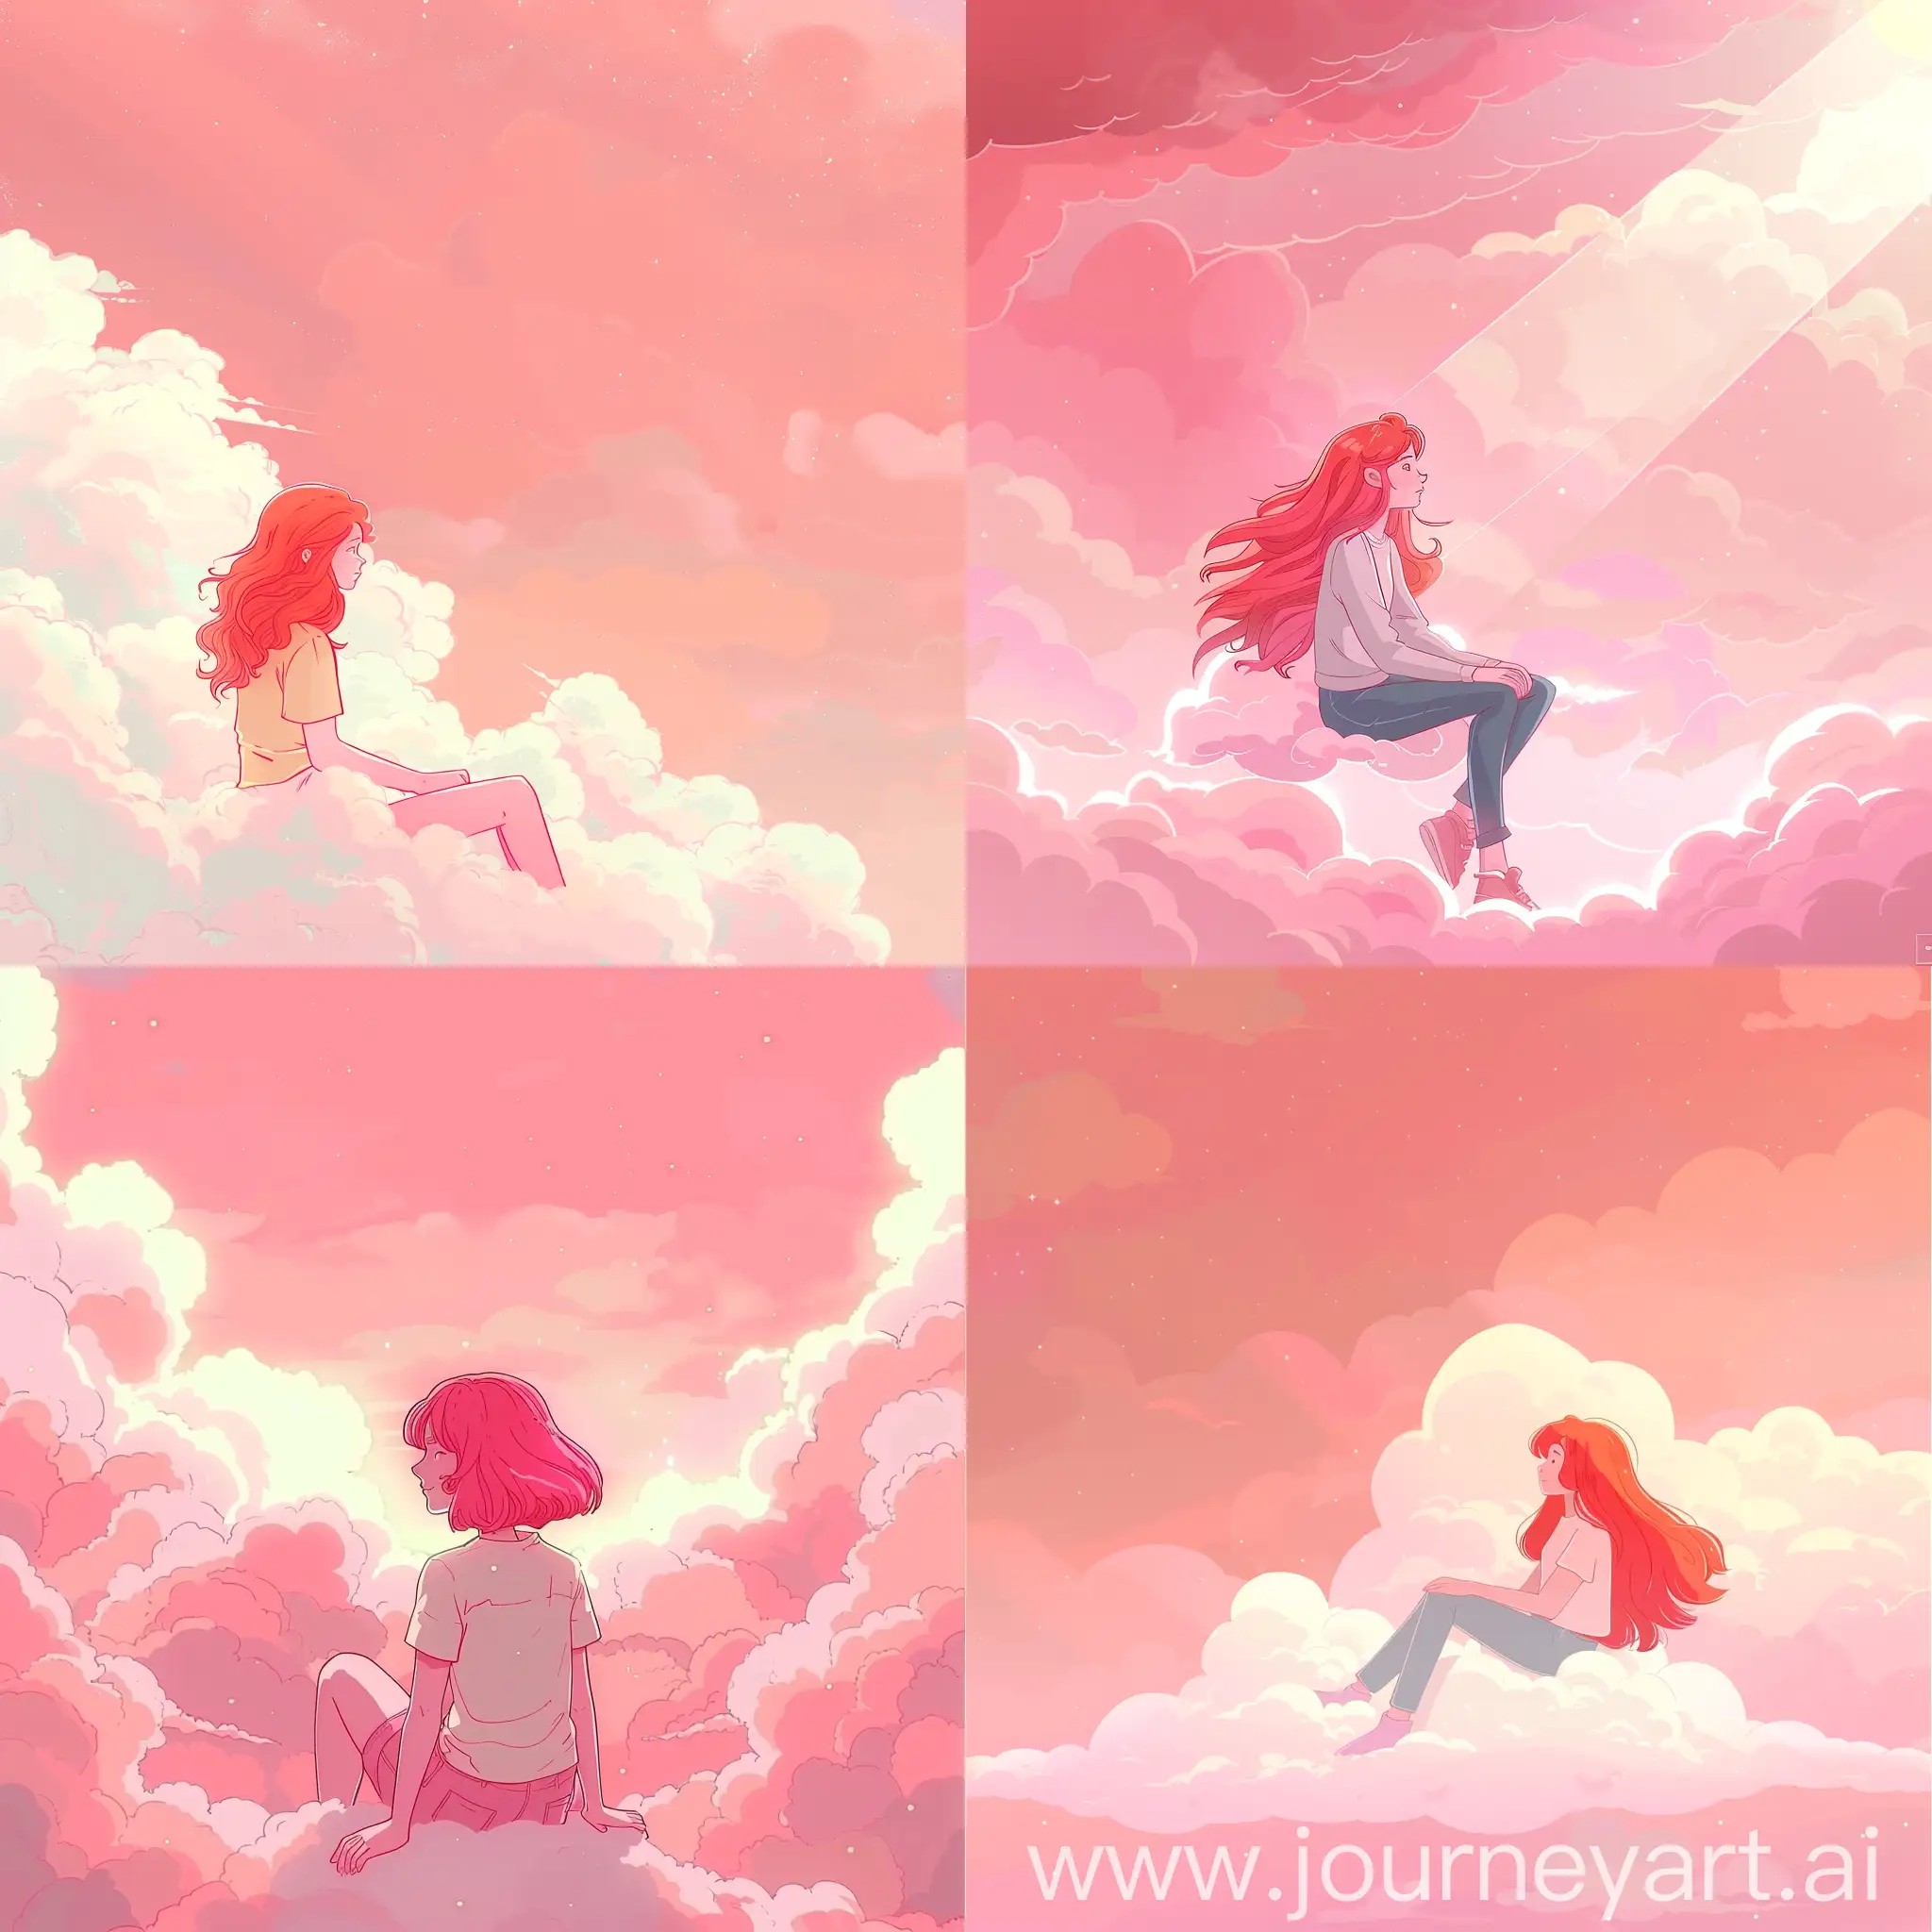 Розовое светящееся небо с лёгкими белыми облачками. На тучке сидит рыжая девушка. В стиле мультика.